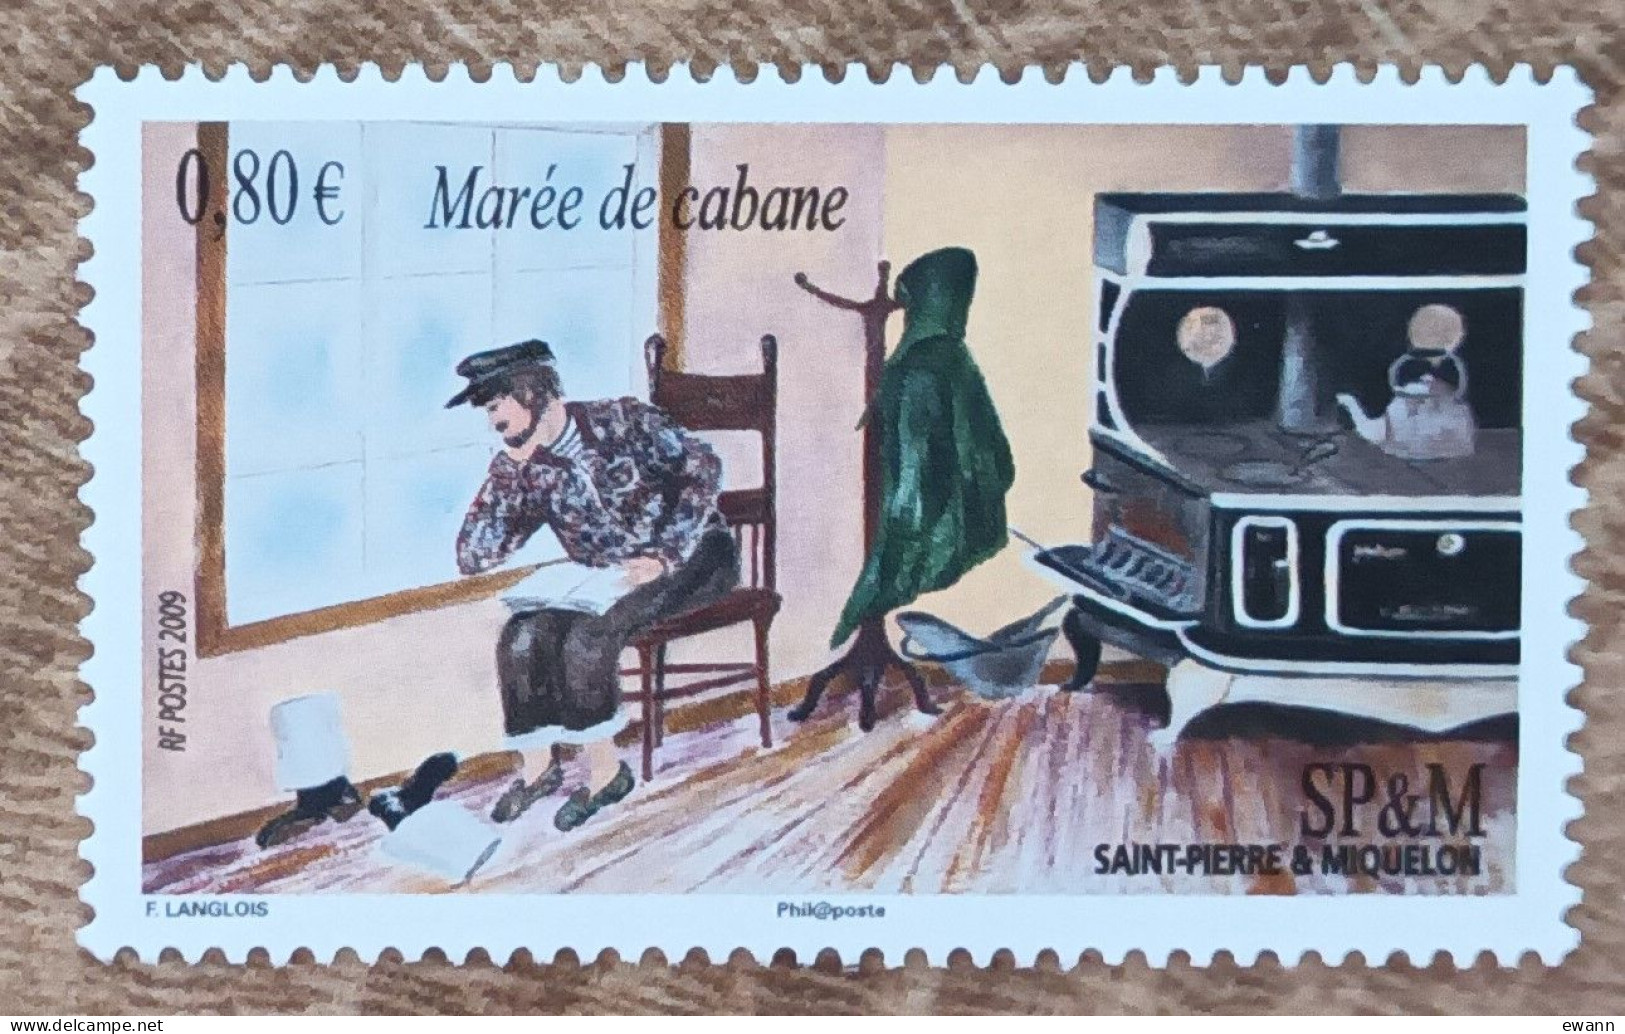 Saint Pierre Et Miquelon - YT N°959 - Expressions Locales / Marée De Cabane - 2009 - Neuf - Neufs